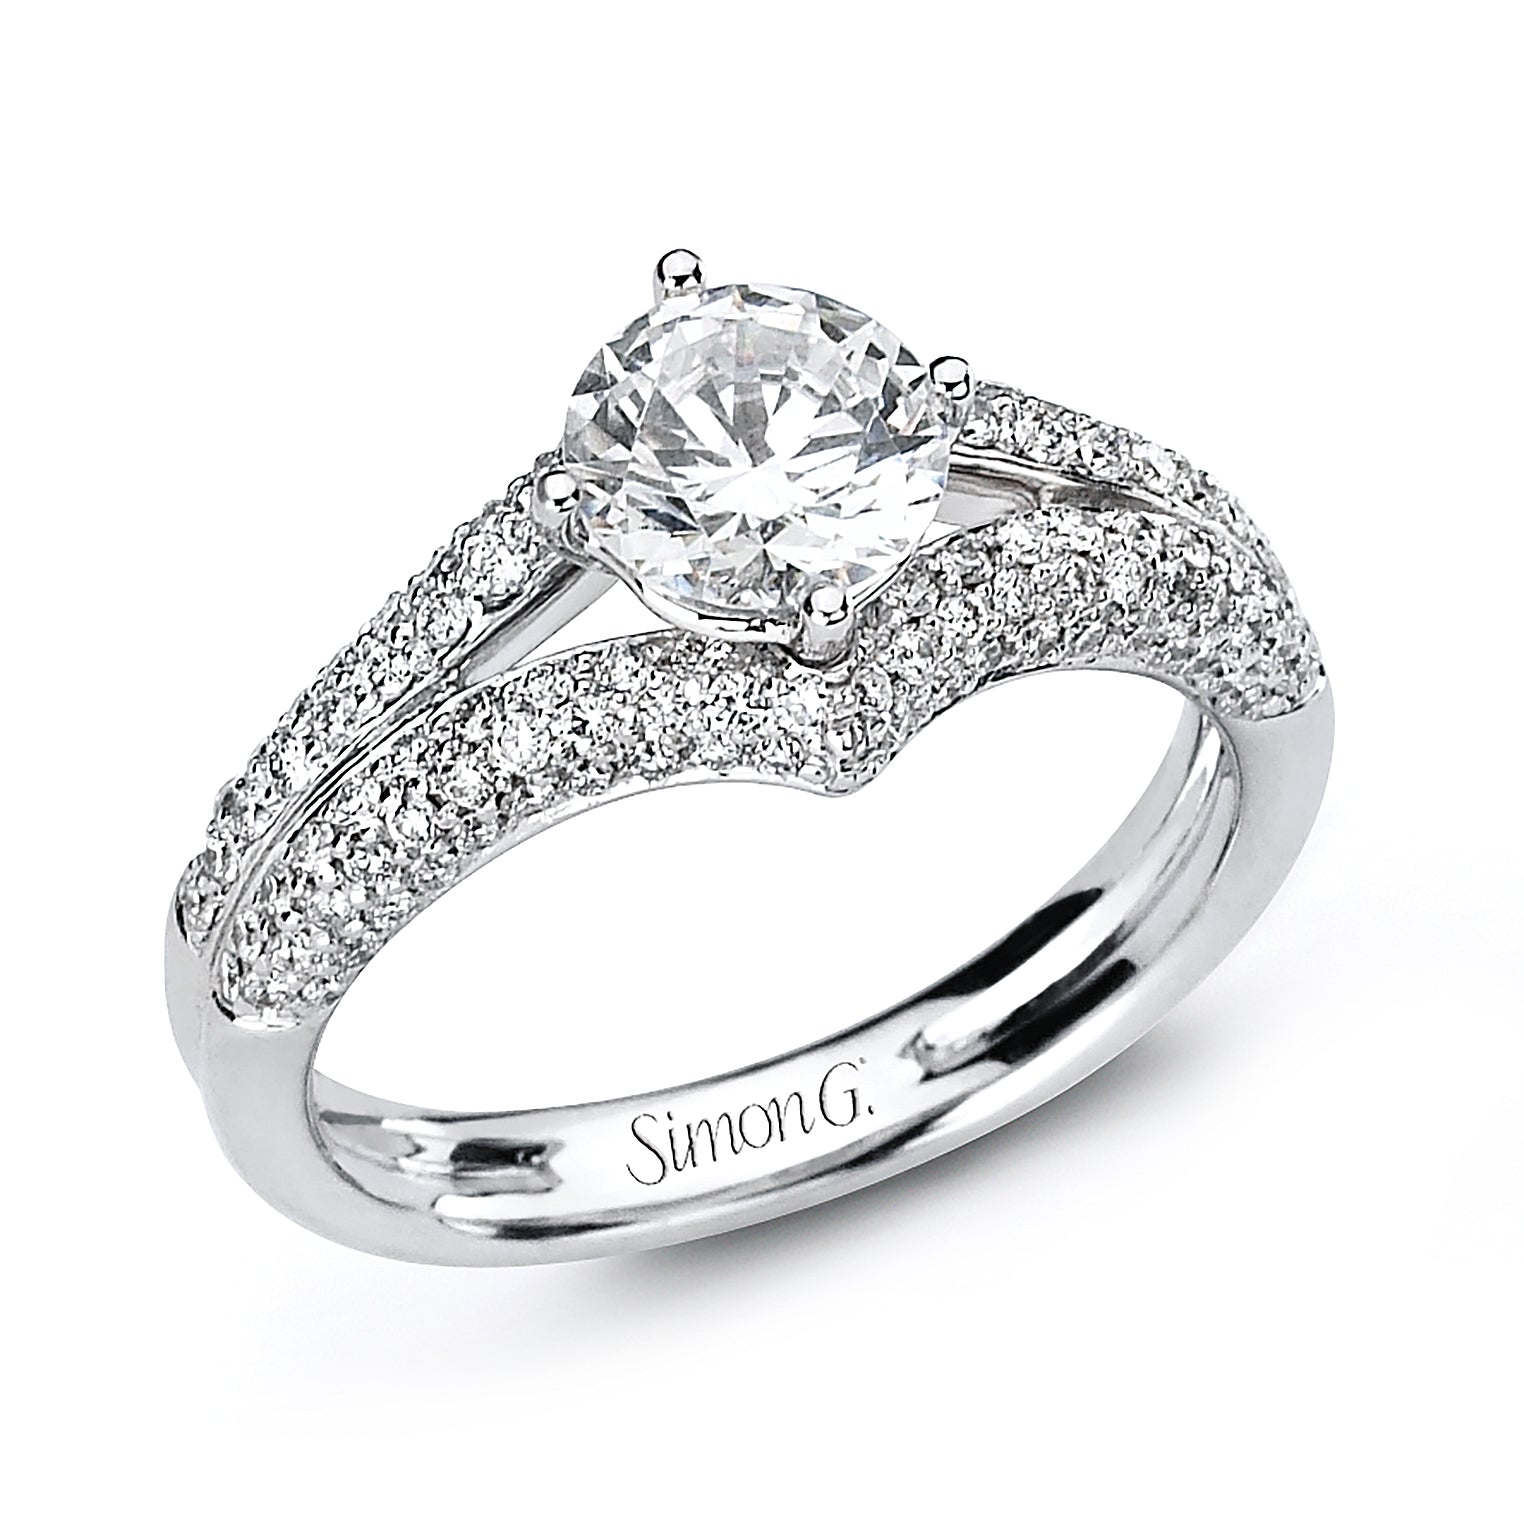 Simon G 18K White Gold Engagement Ring Setting